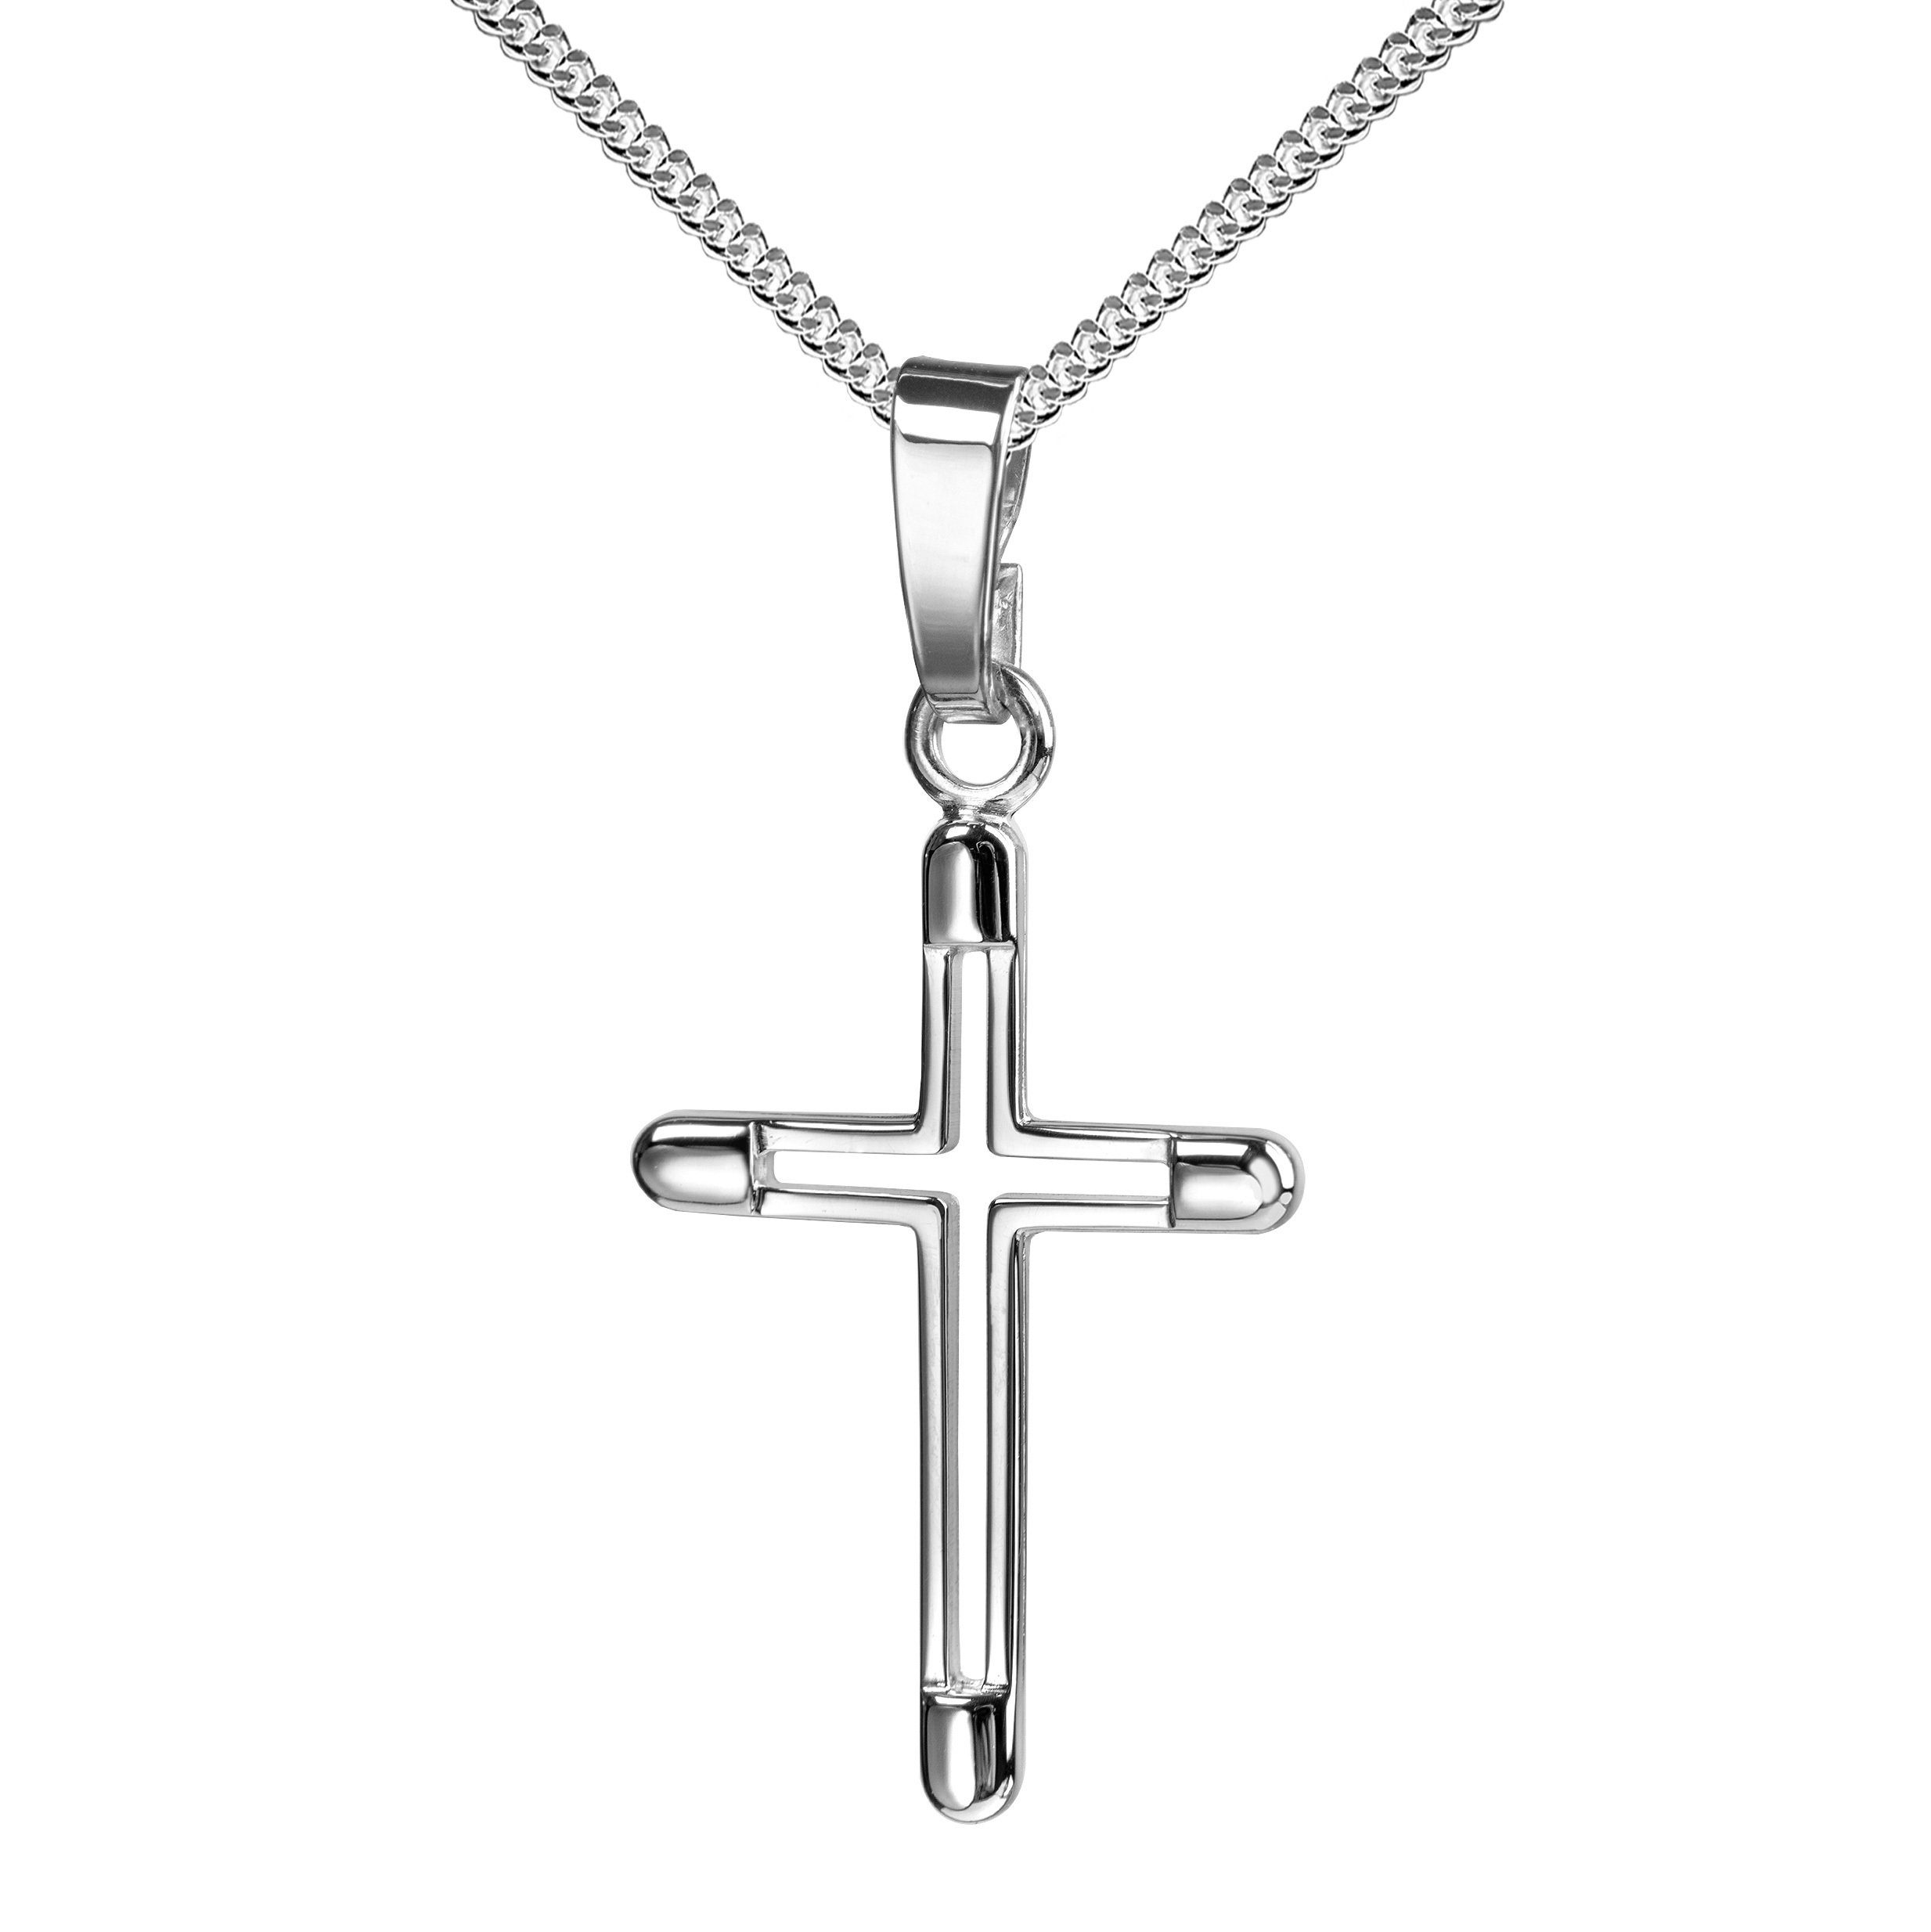 JEVELION Kreuzkette kleiner Kreuzanhänger 925 Silber - Made in Germany  (Silberkreuz, für Damen und Kinder), Mit Silberkette 925 - Länge wählbar 36  - 70 cm oder ohne Kette.